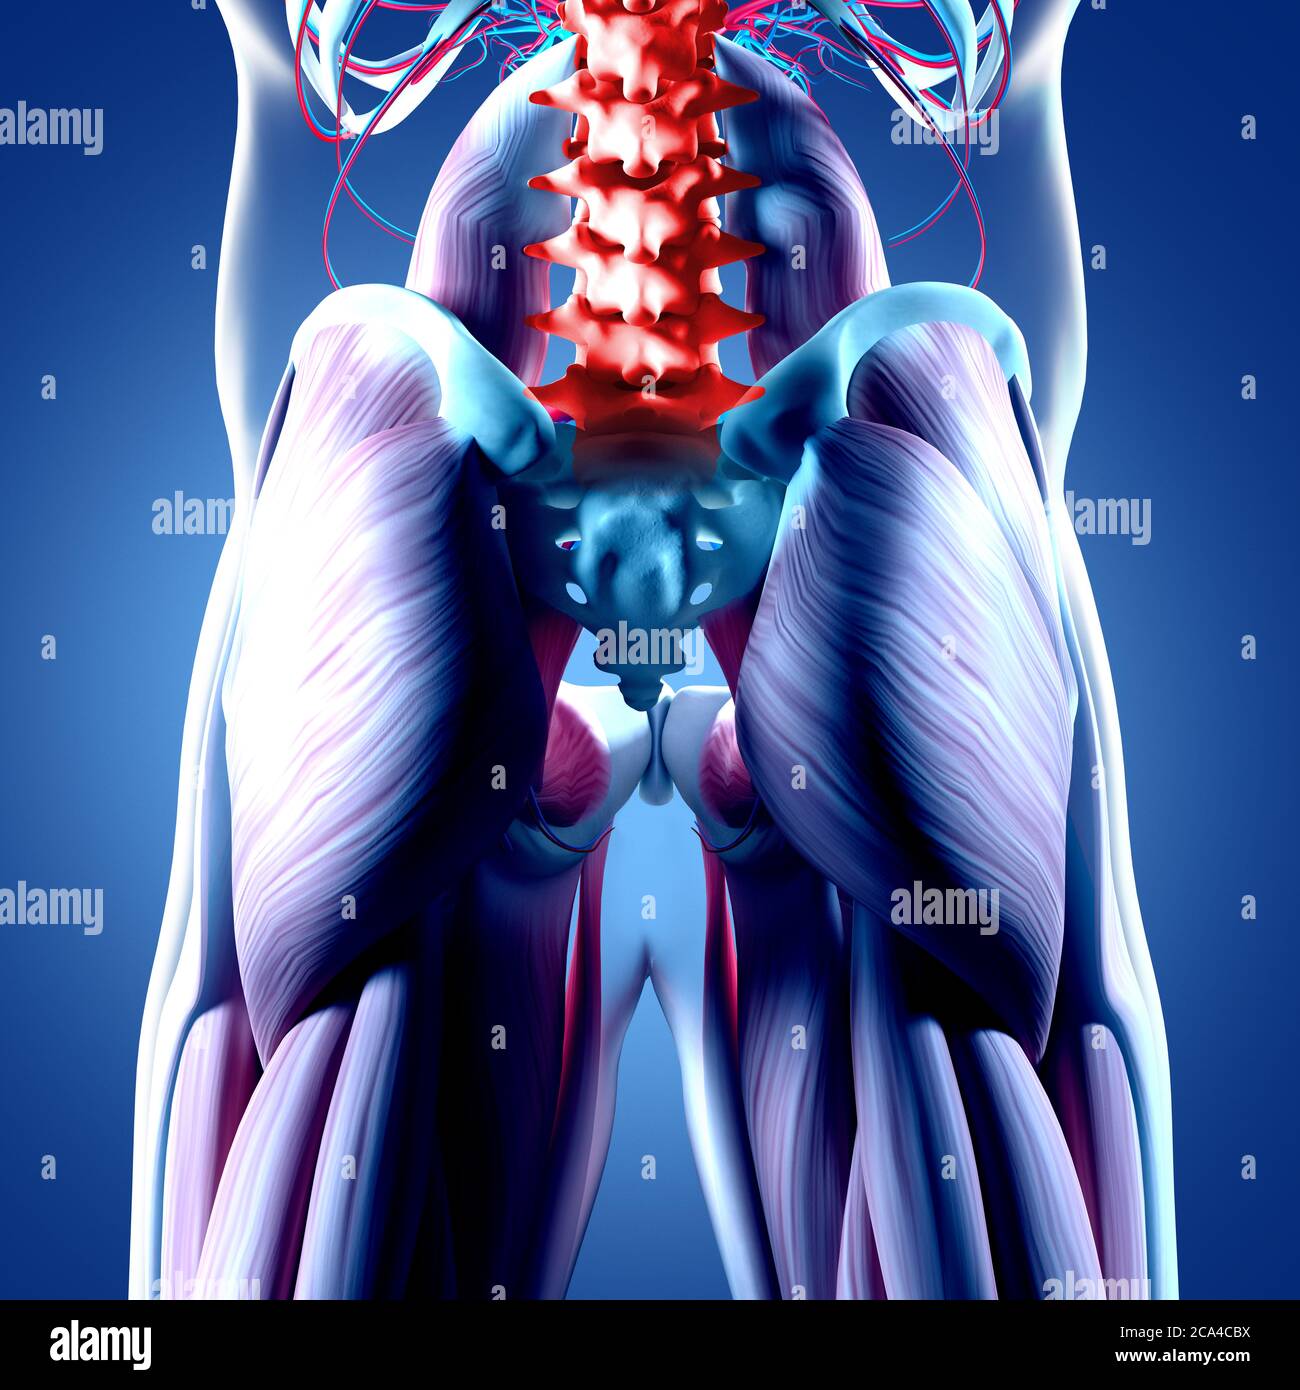 Anatomiedarstellung der menschlichen Wirbelsäule, des Beckens und des Gluteus maximus. 3d-Illustration. Stockfoto